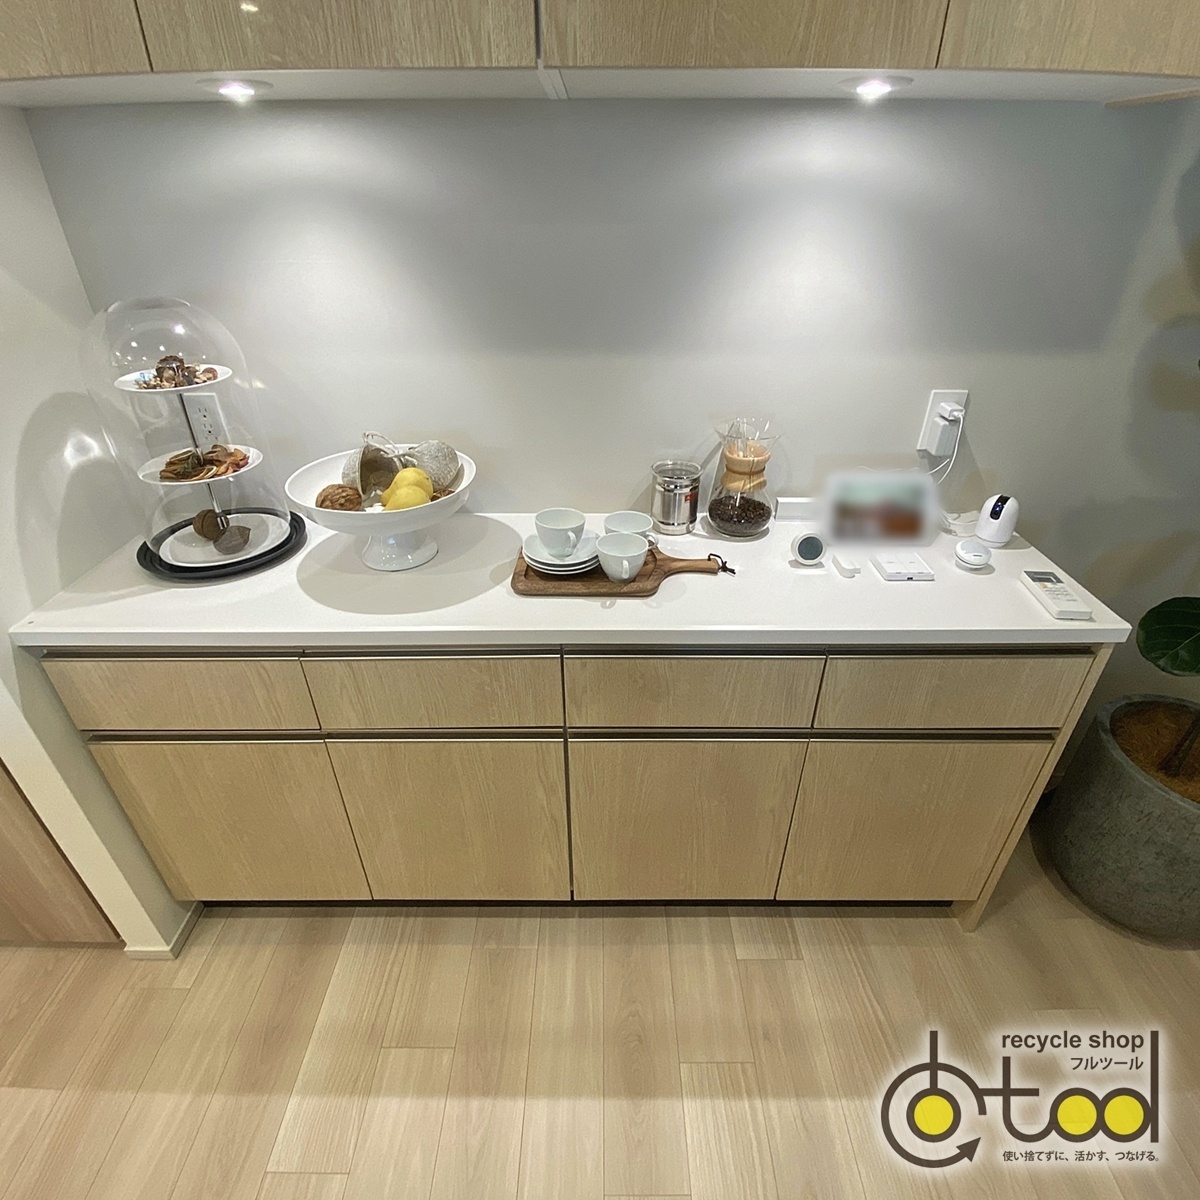 [ Osaka ] Takara стандартный производства шкаф / буфет кухня место хранения кухня панель / освещение имеется навесной шкаф /W1800/mote Leroux m экспонирование установка товар [KCD26]